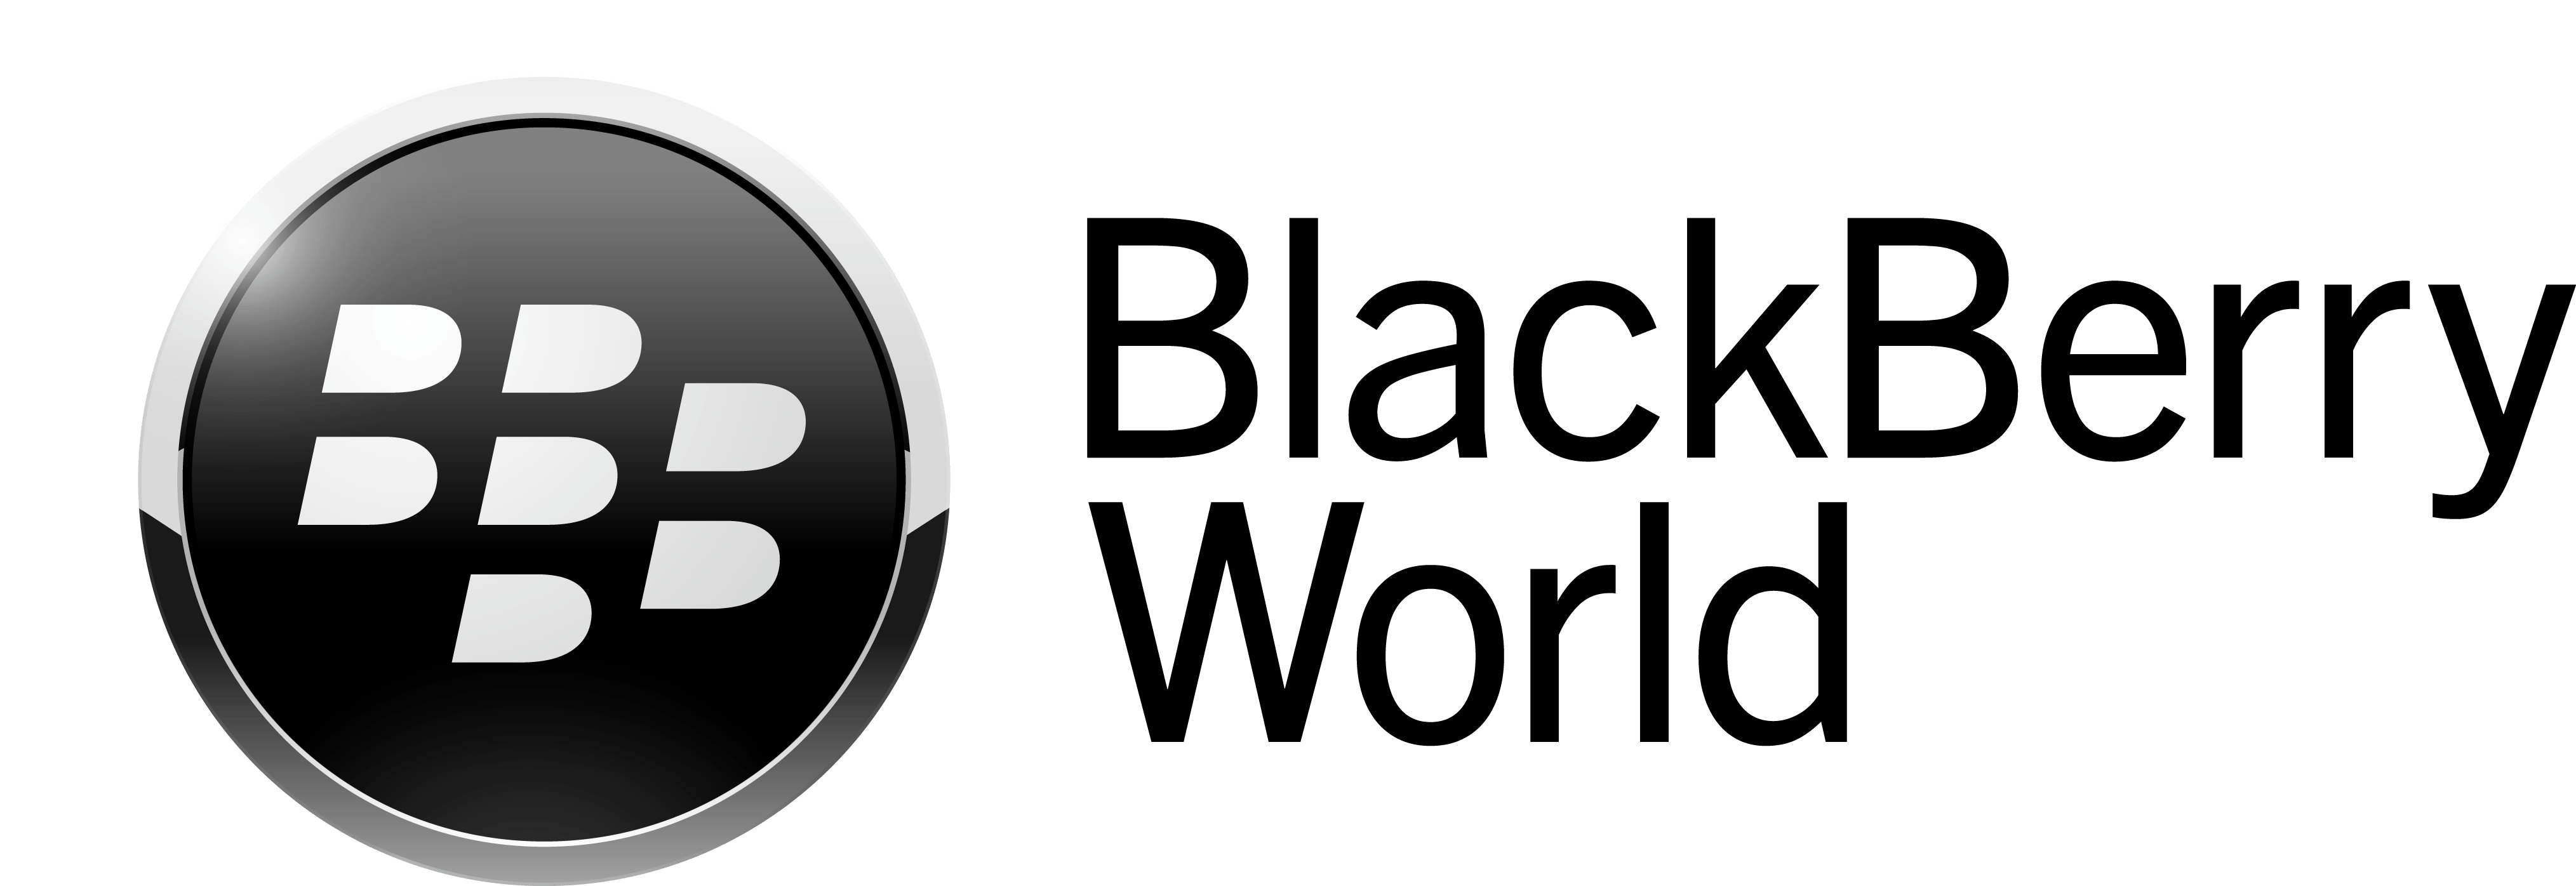 BlackBerry Logo - Blackberry Logo Vector PNG Transparent Blackberry Logo Vector.PNG ...